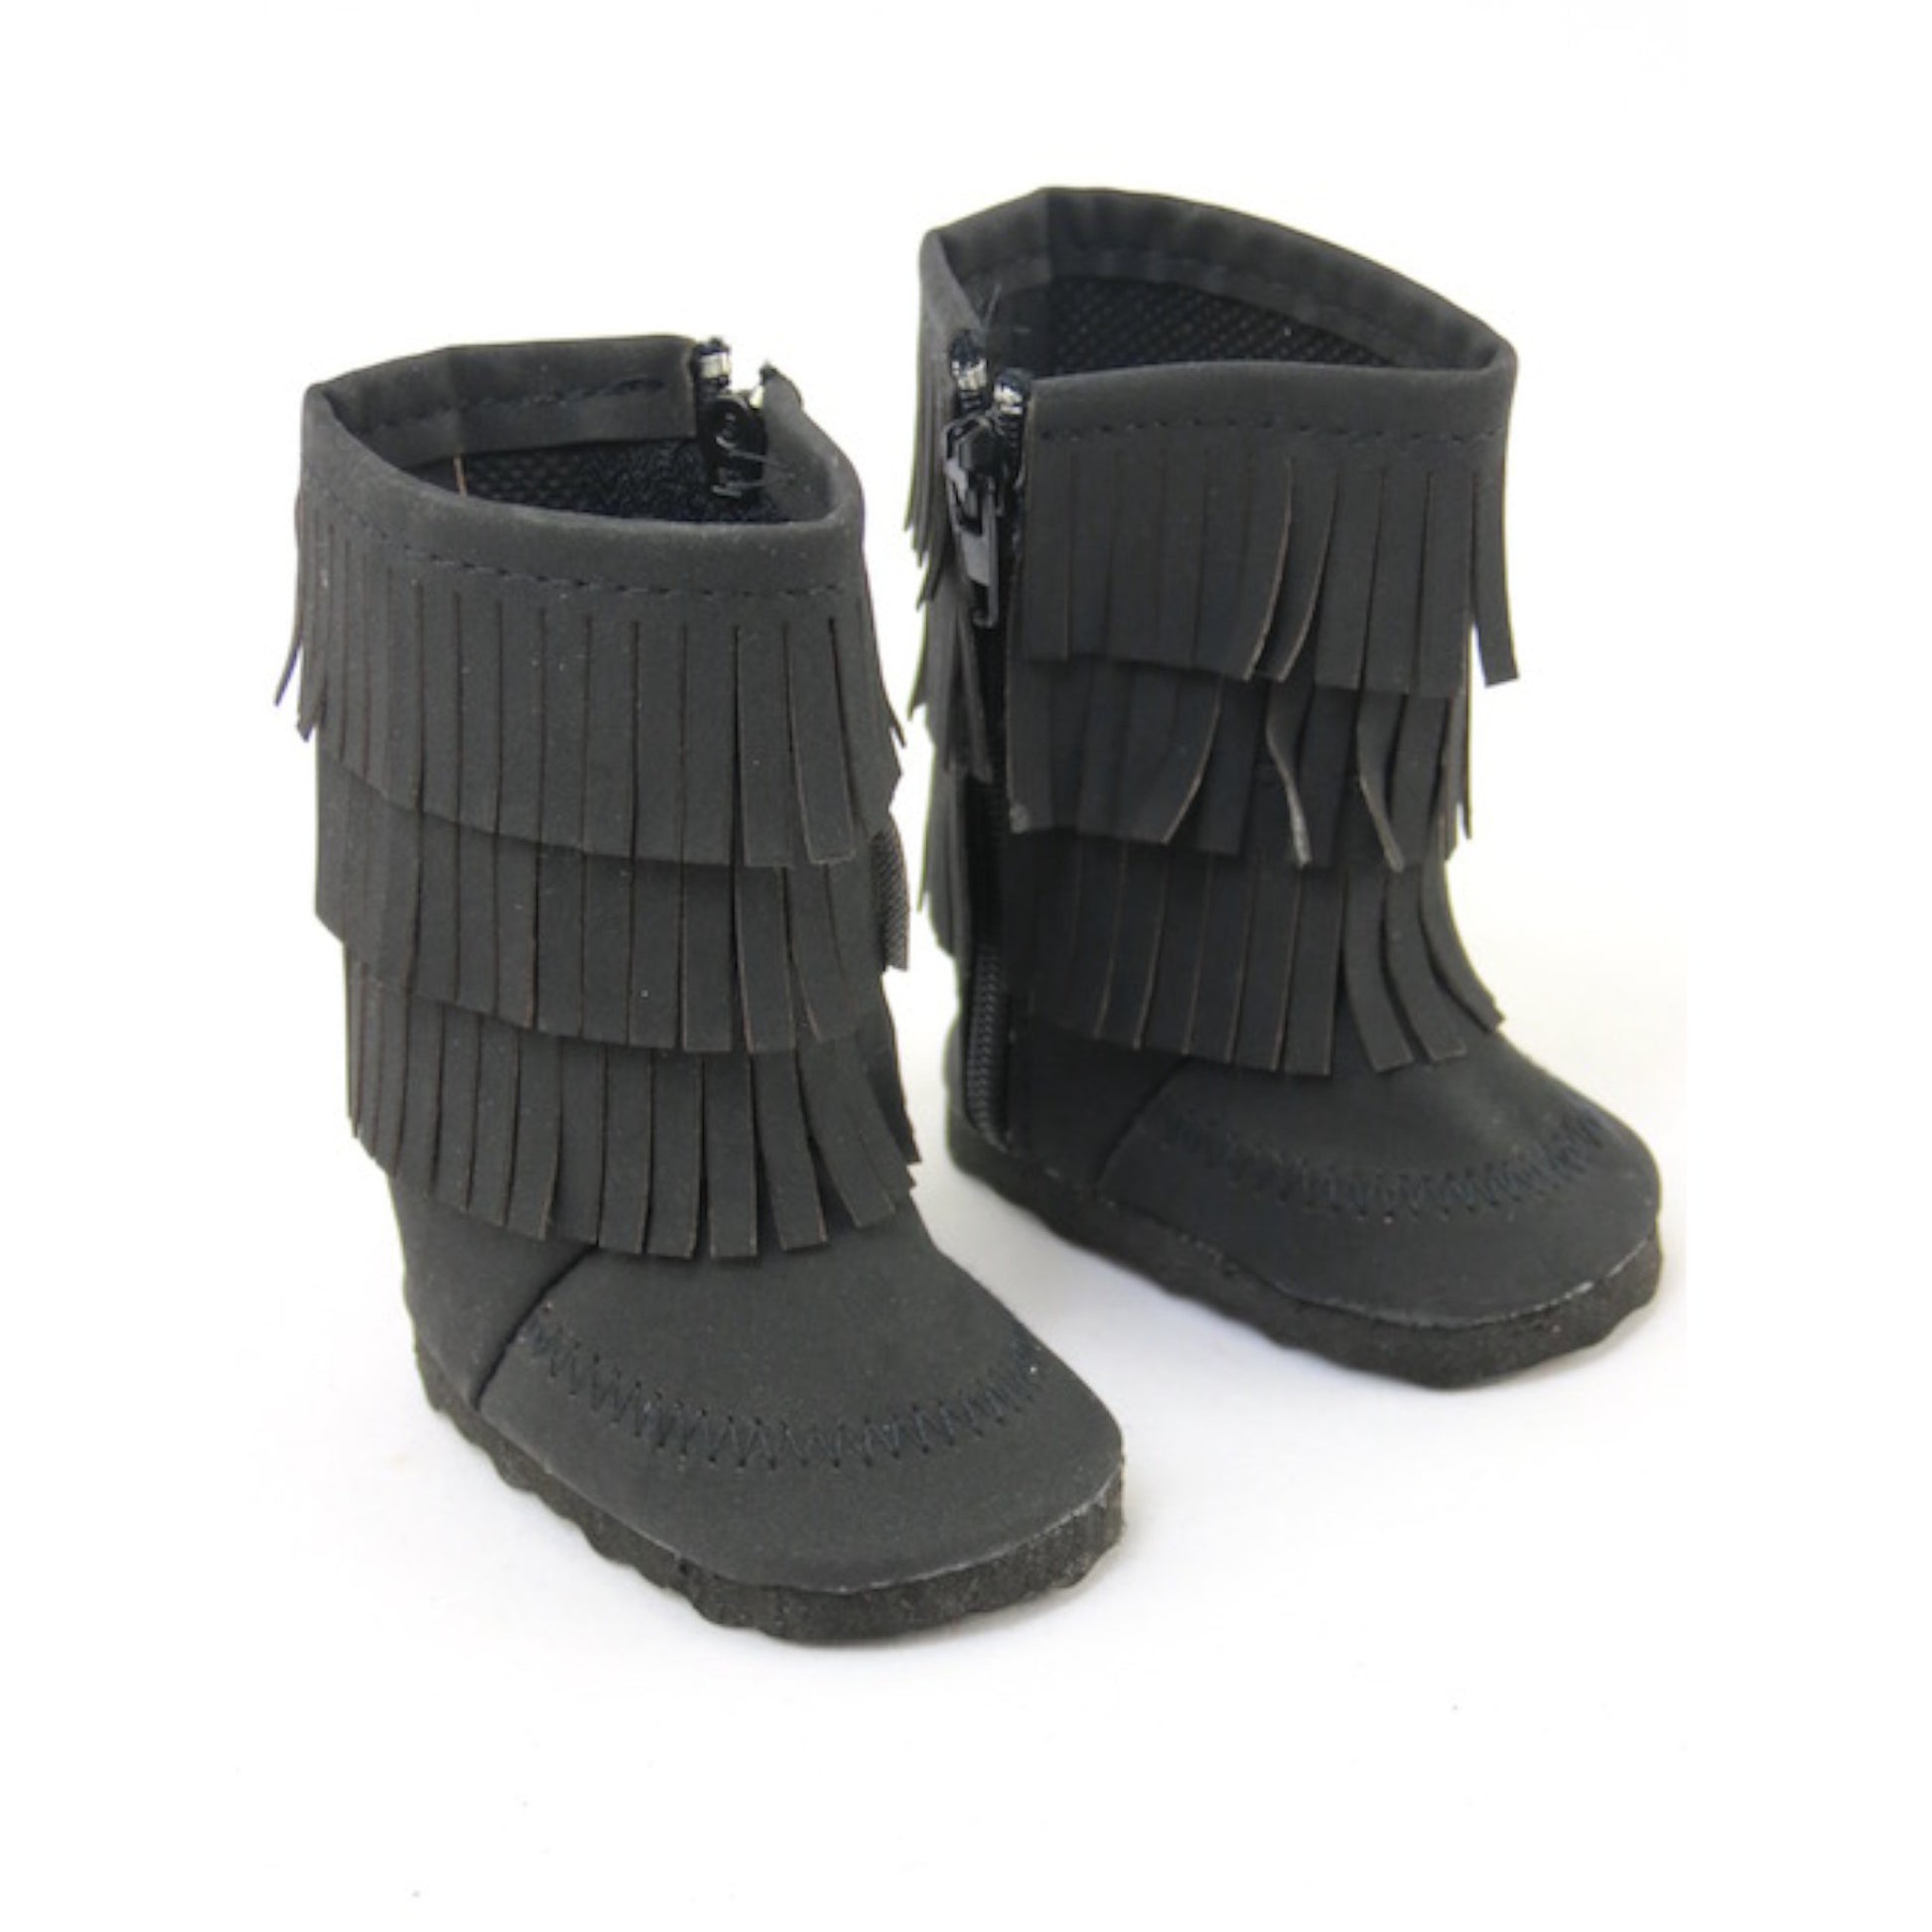 Black Fringe Boots for 18-inch dolls